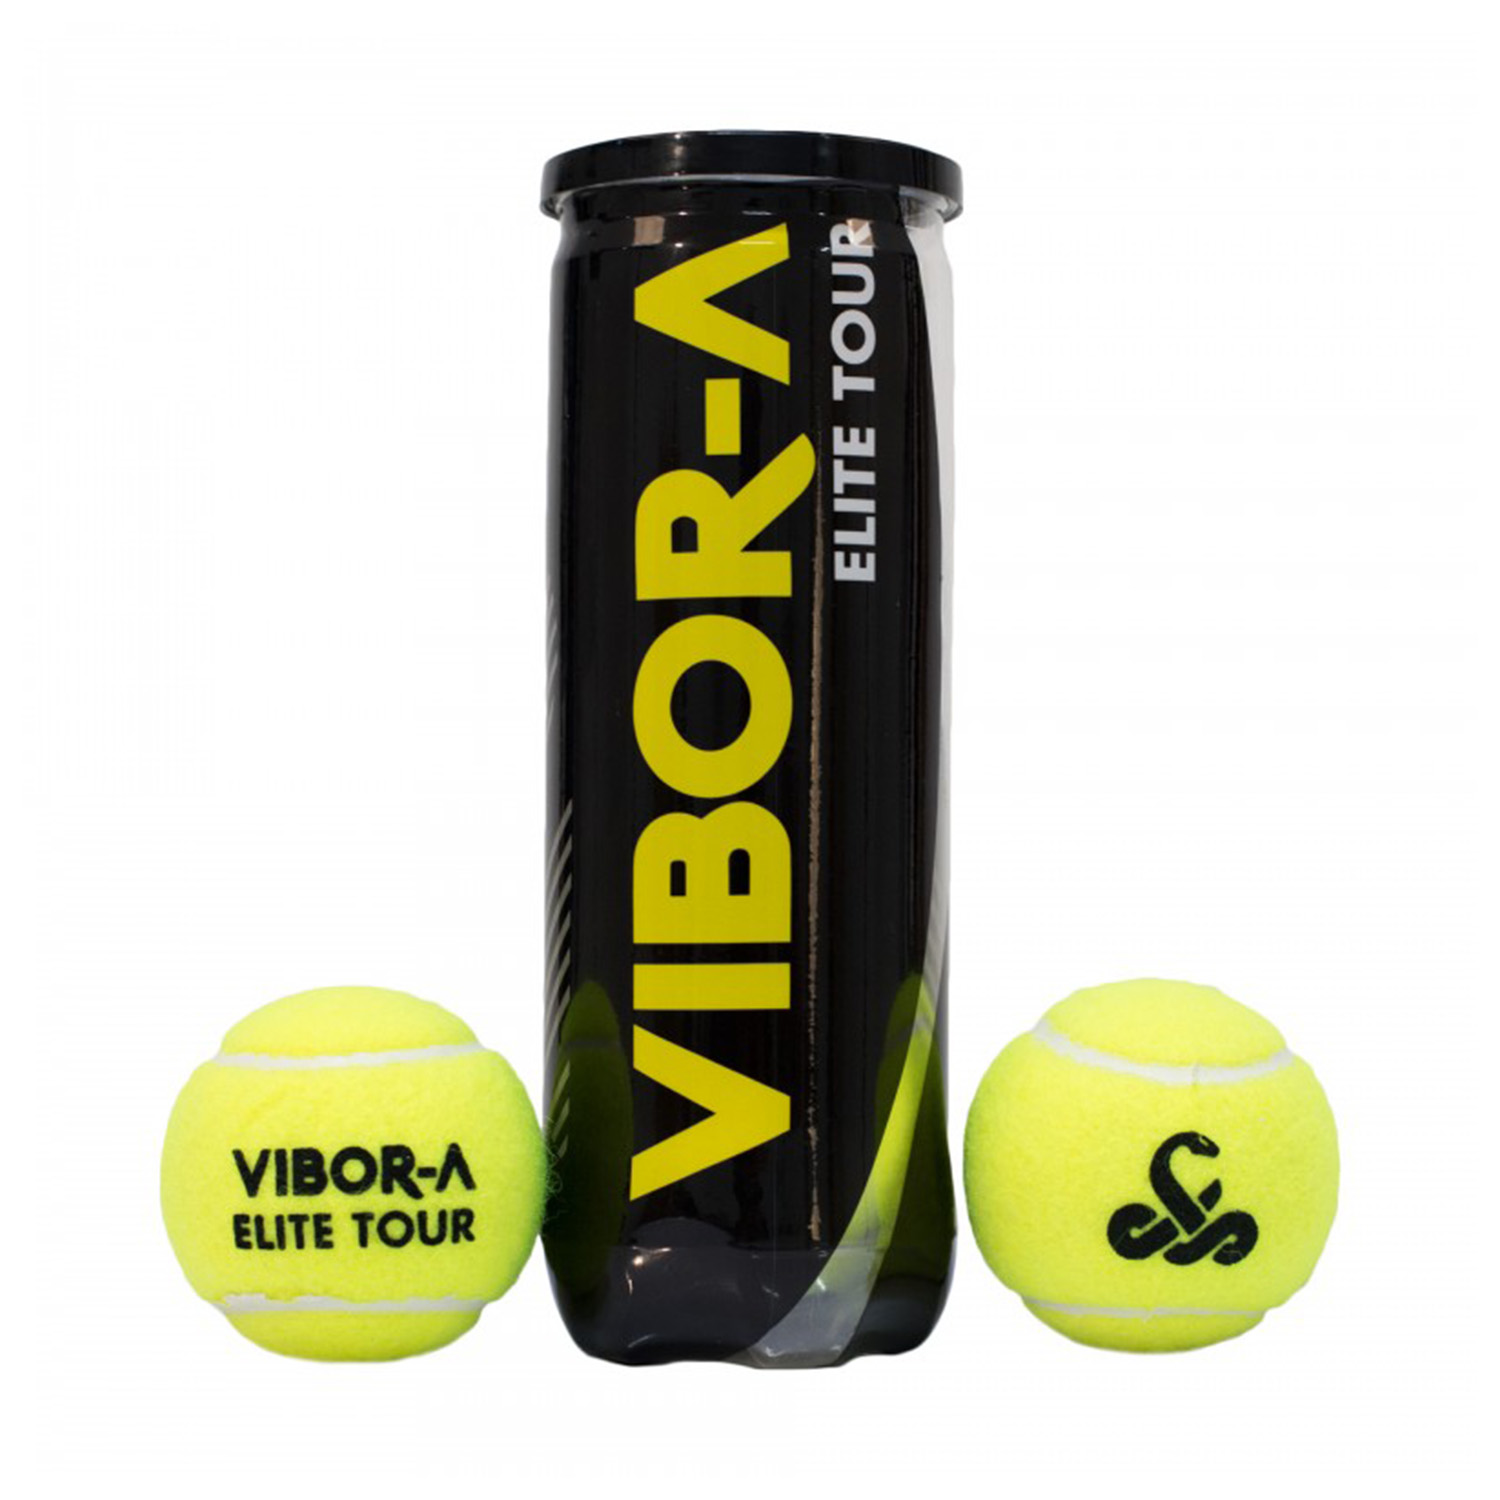 Vibor-A Elite Tour - 3 Balls Can